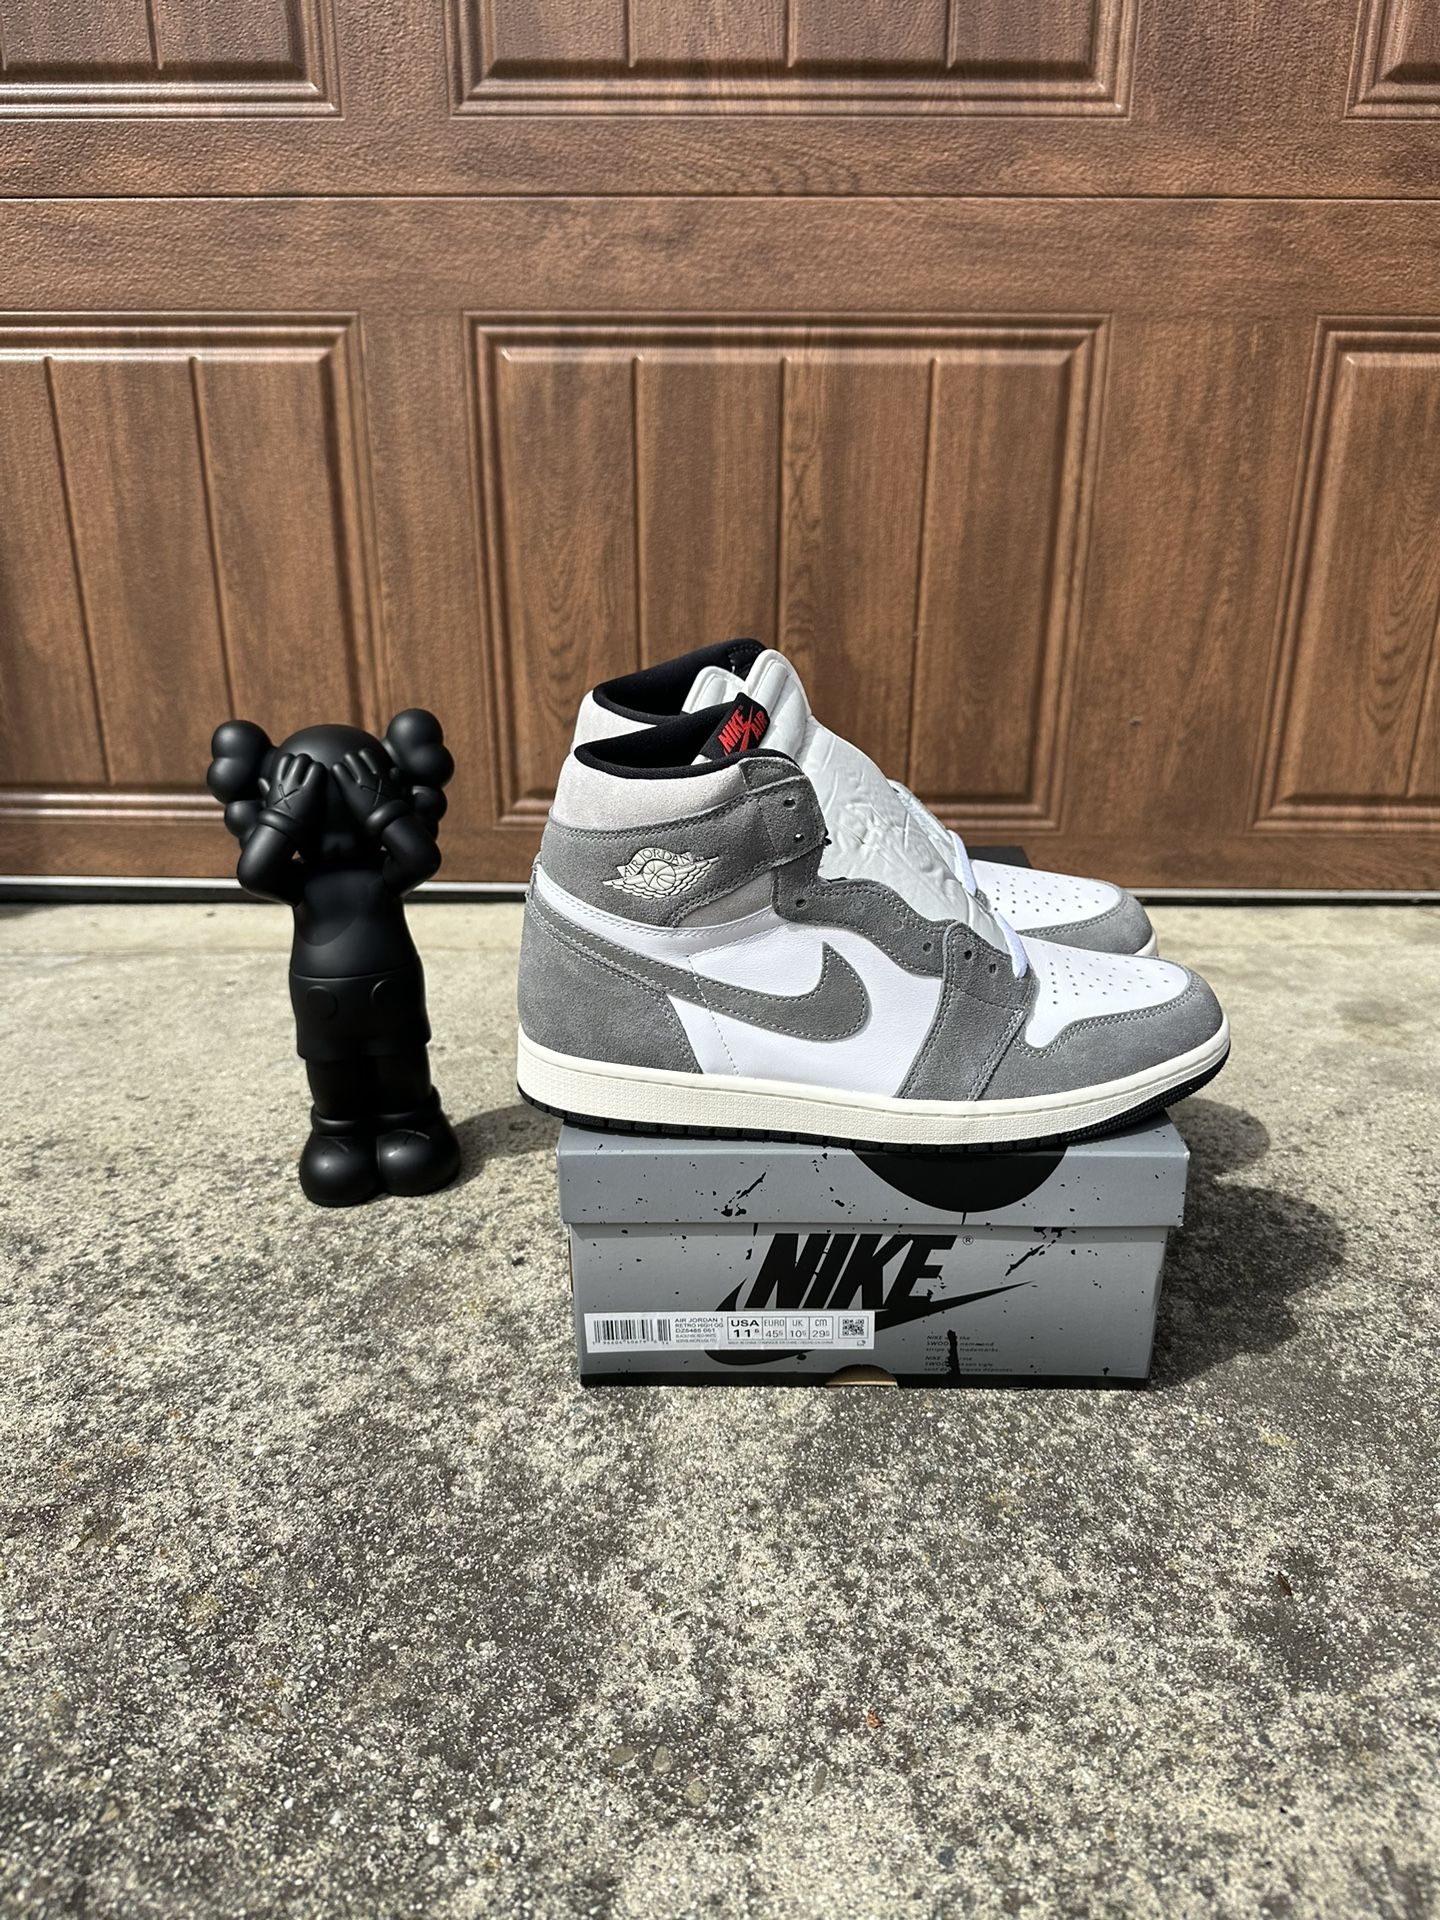 Nike Air Jordan 1 Retro High OG “Washed Black” Size 11.5 Men